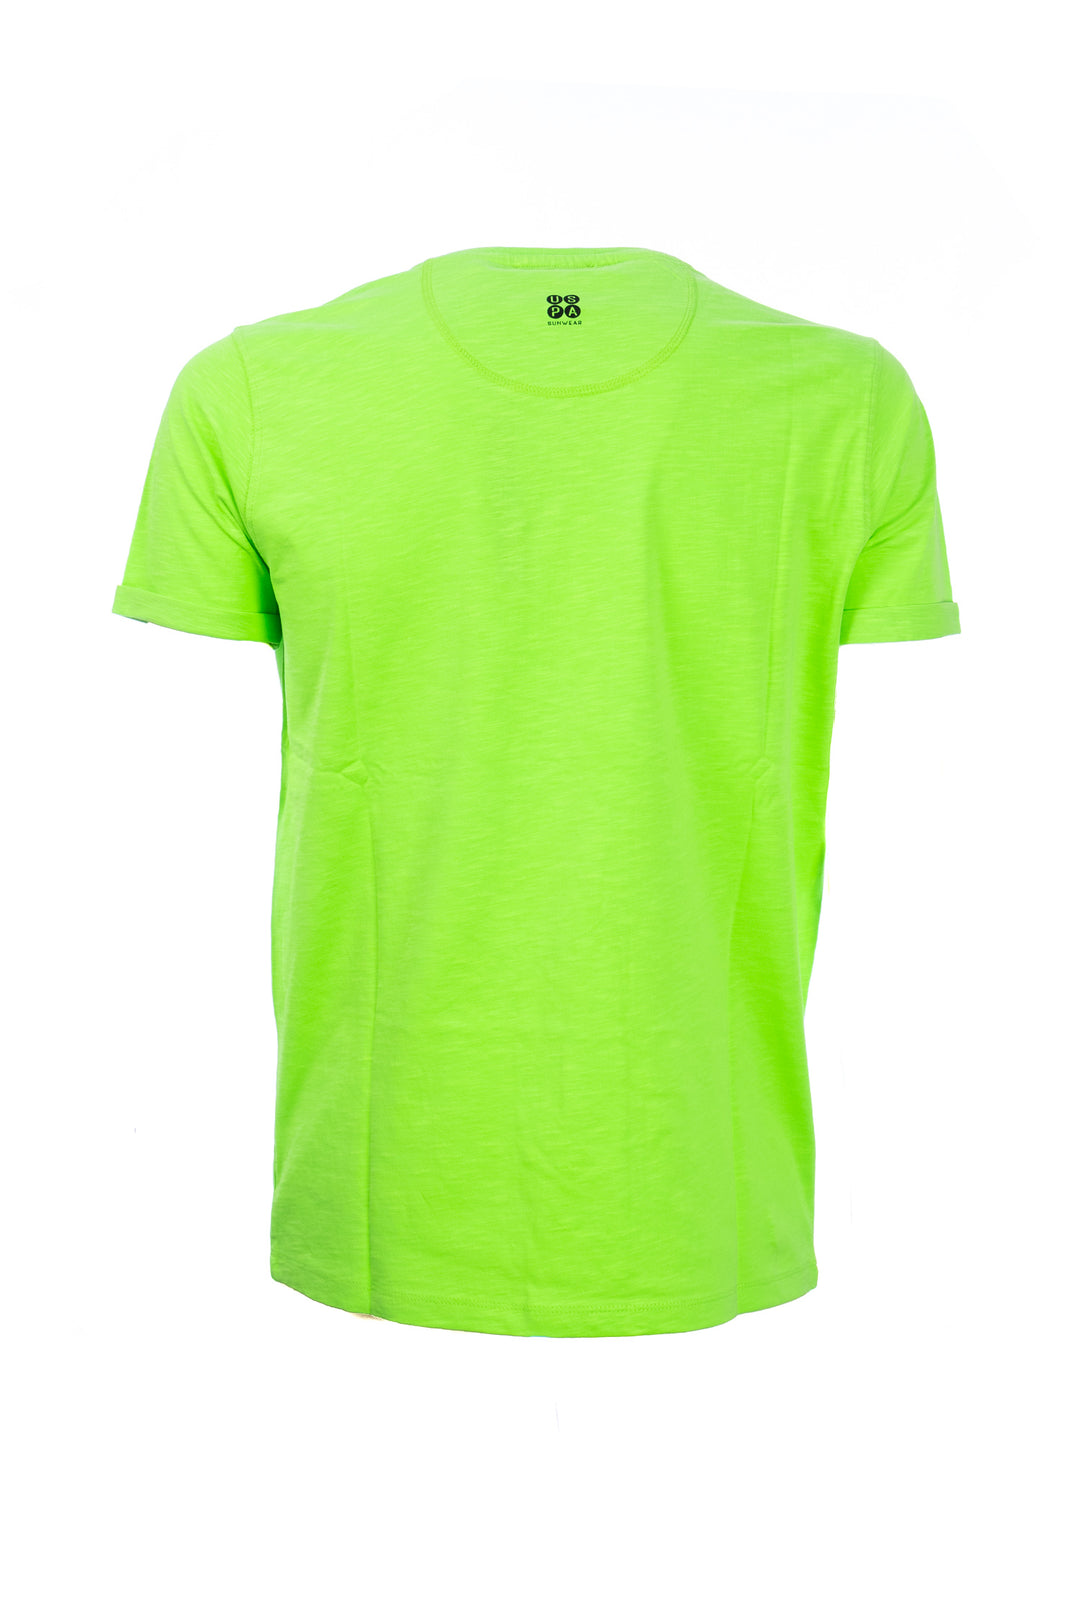 U.S. POLO ASSN. BEACHWEAR T-shirt verde in cotone con logo ricamato e maniche con risvolto - Mancinelli 1954